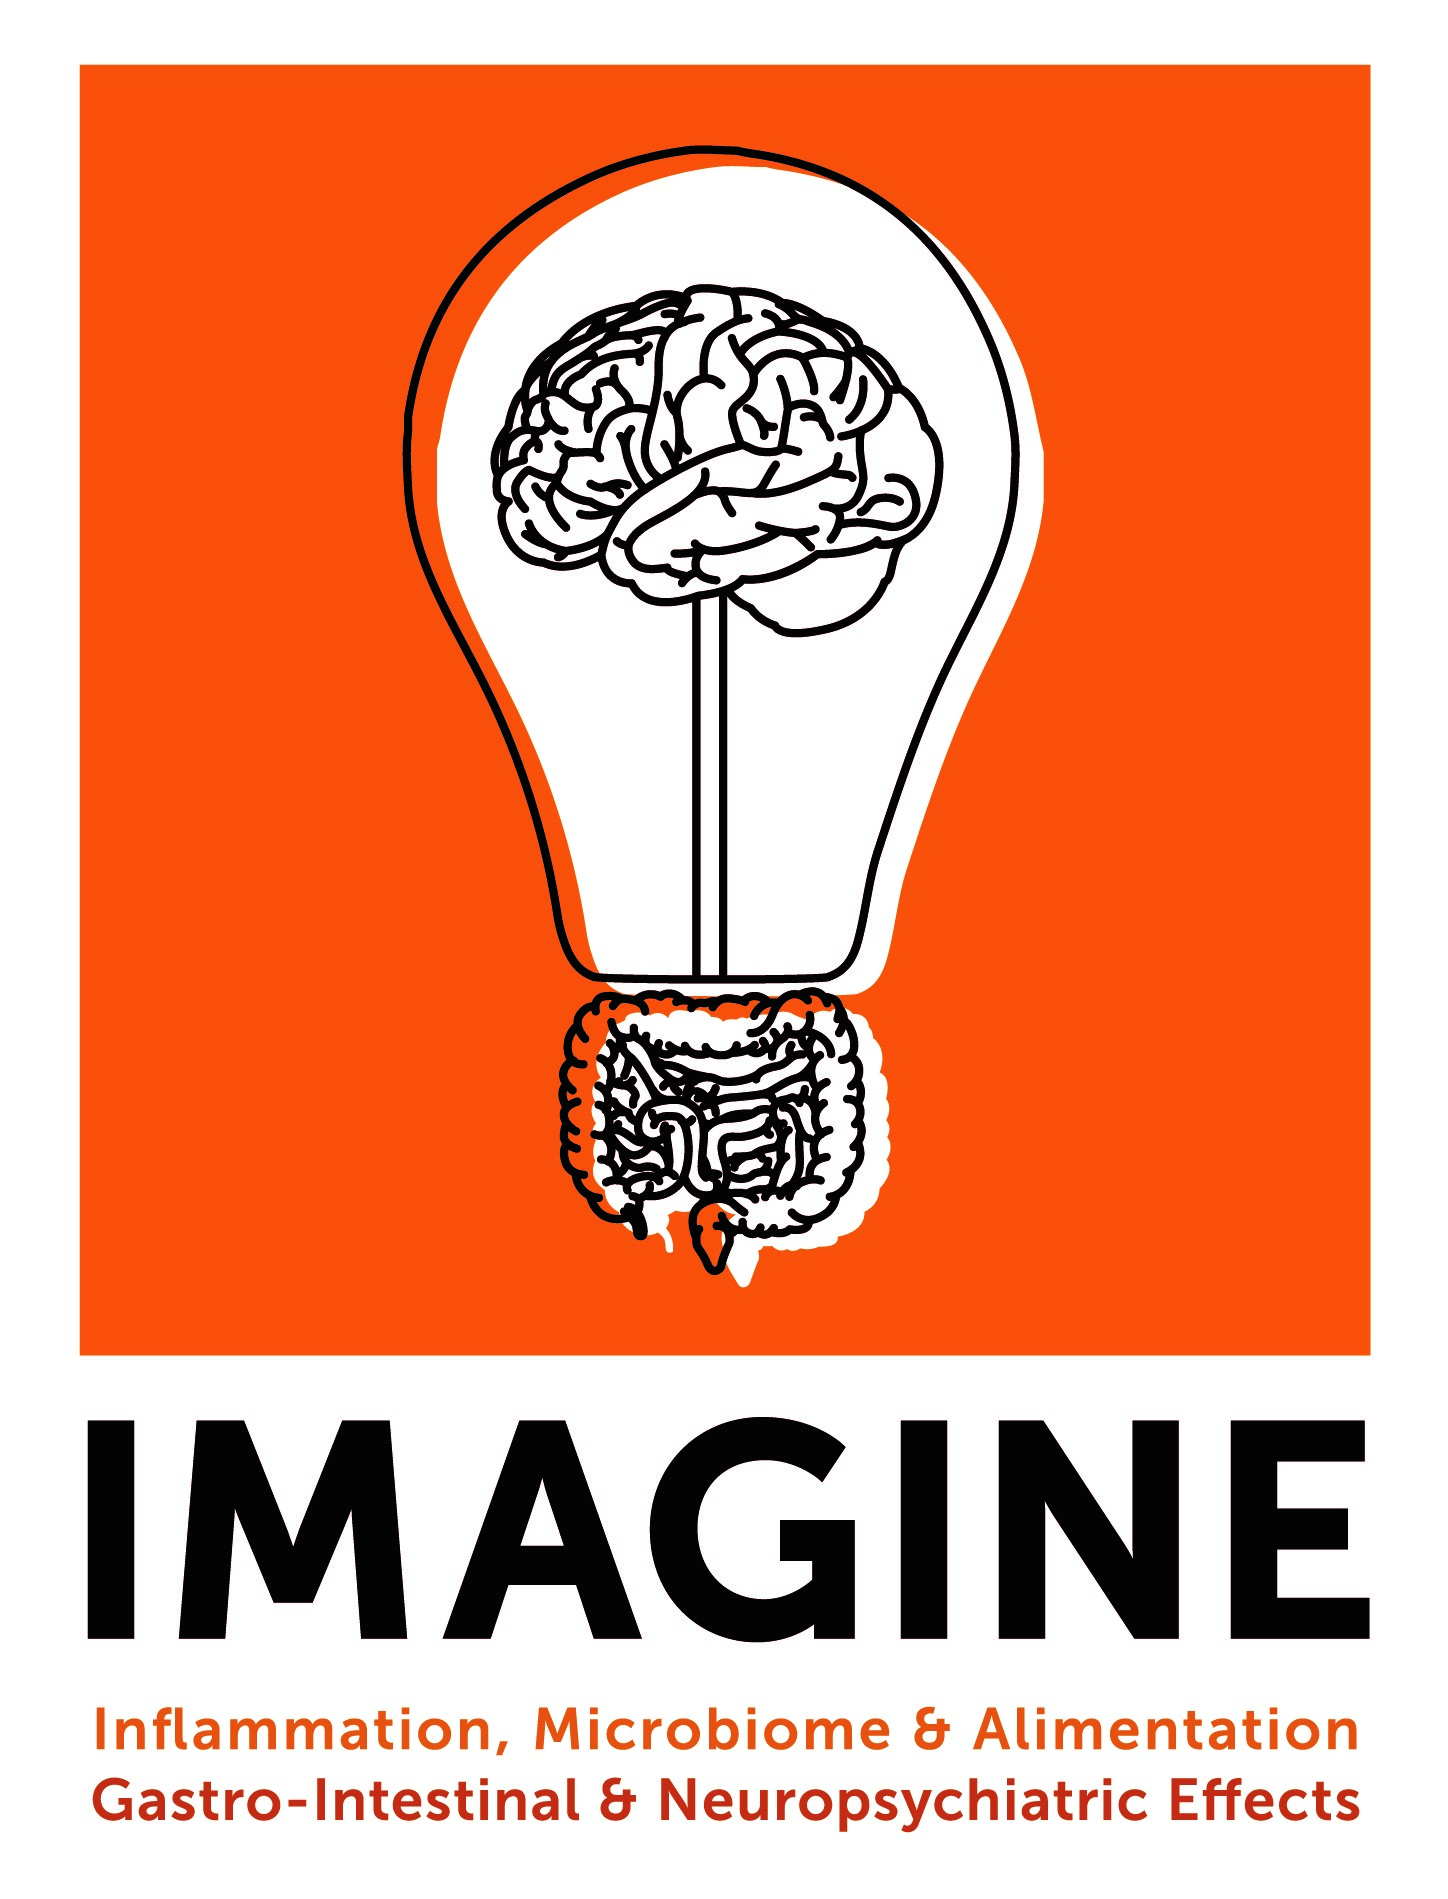 Lightbulb Logo - imagine lightbulb logo - IMAGINE